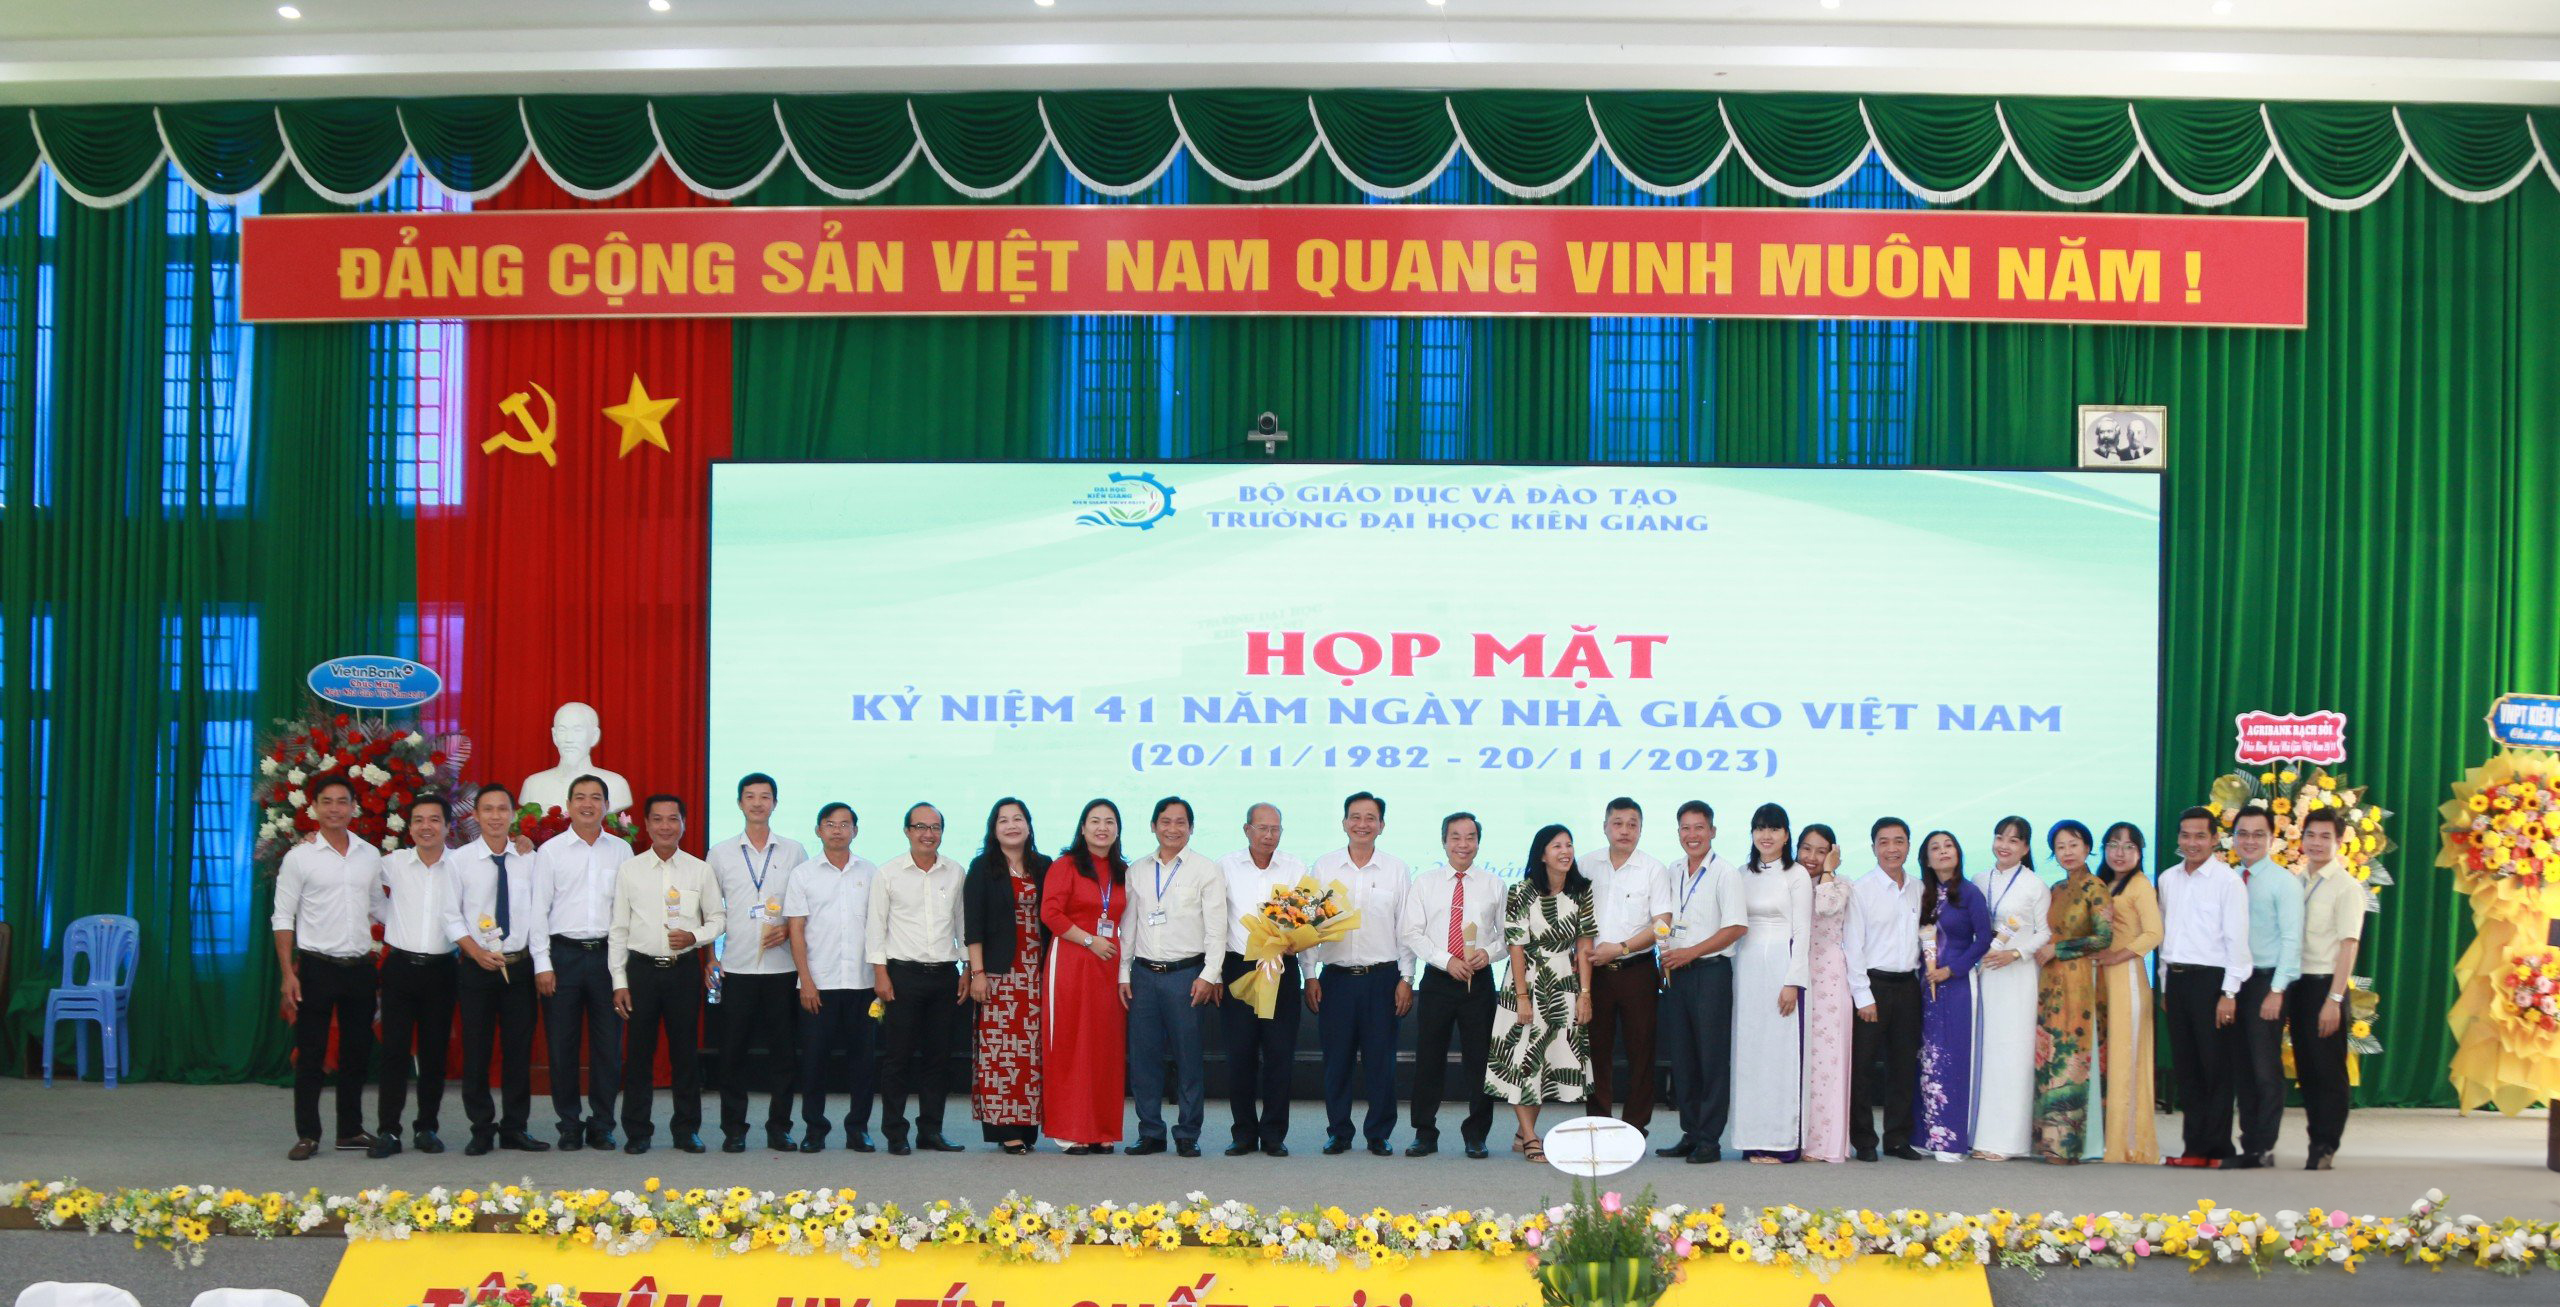 Họp mặt kỷ niệm 41 năm ngày Nhà giáo Việt Nam (20/11/1982 – 20/11/2023)